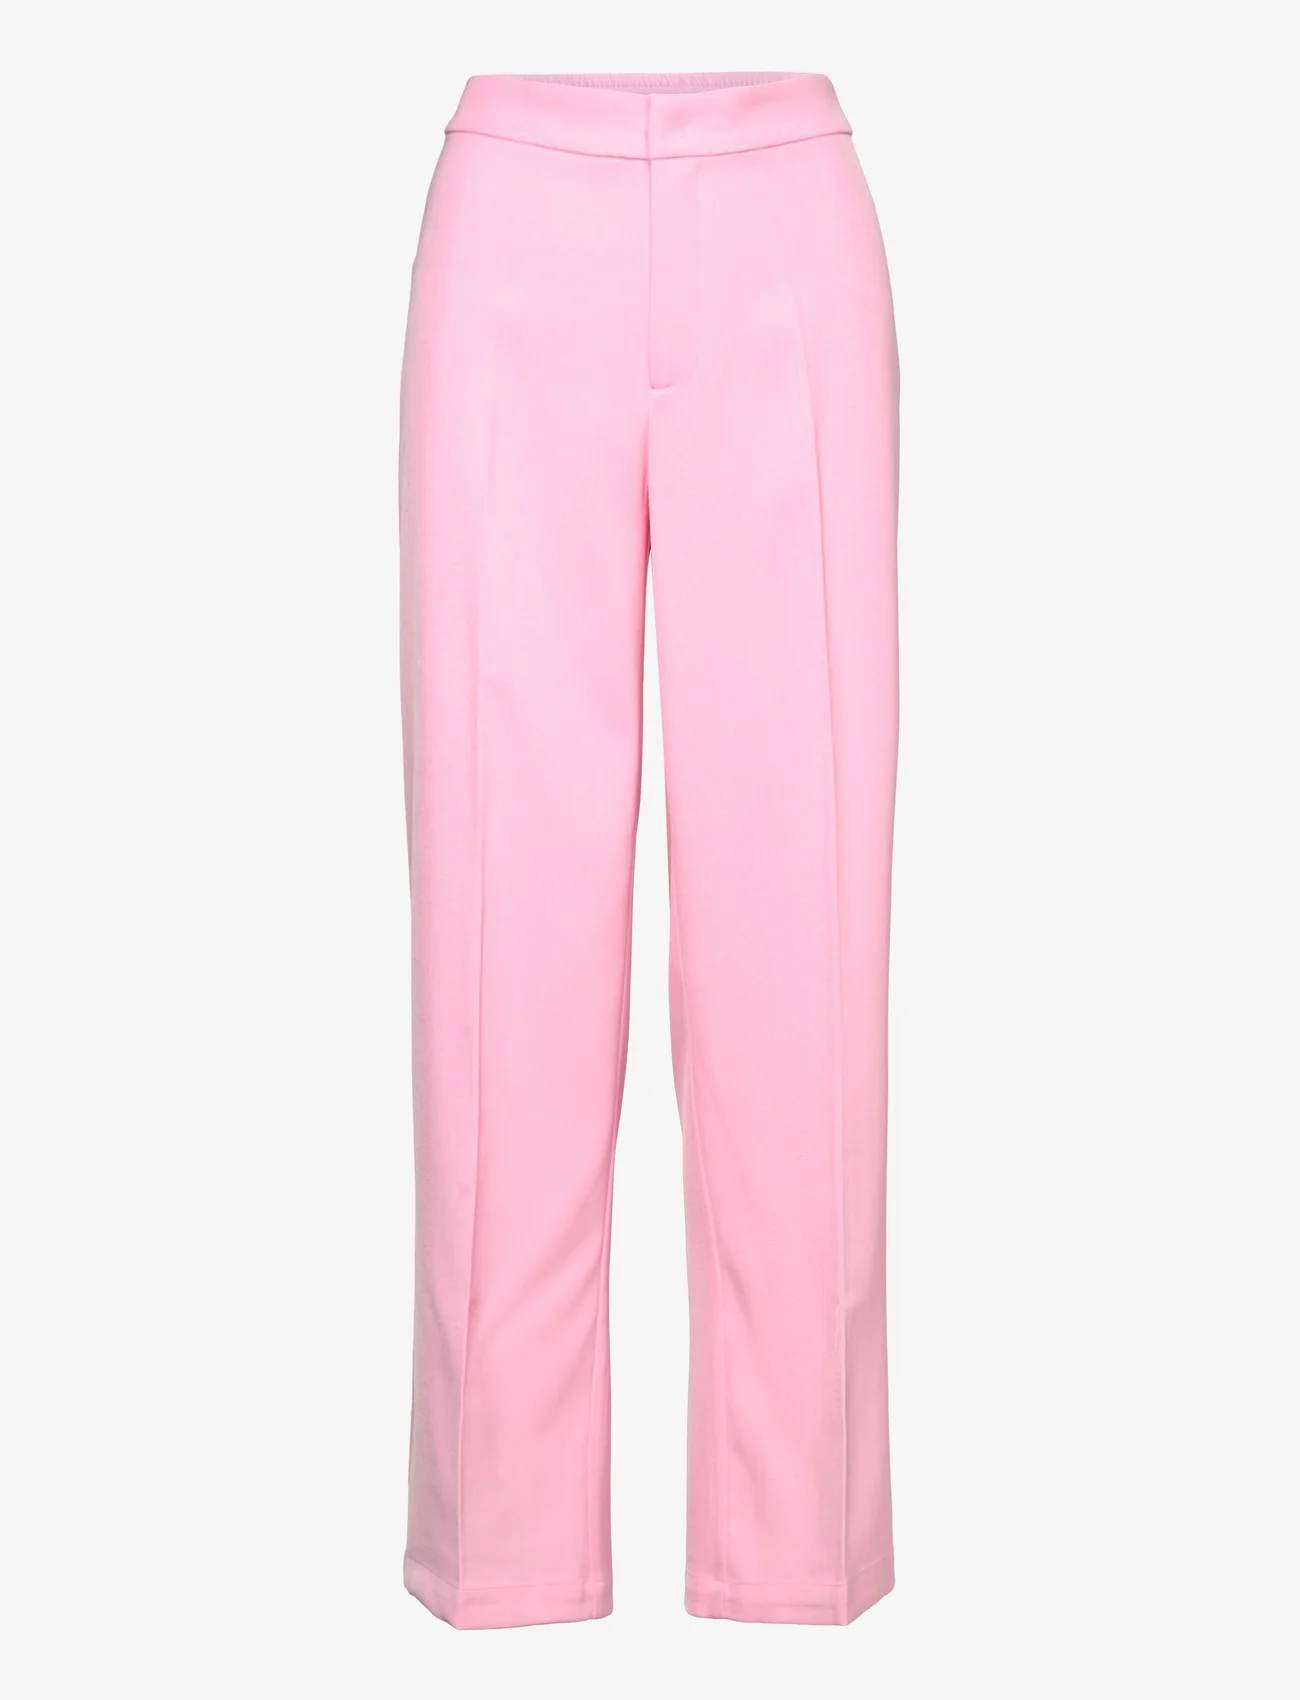 A-View - Diana split pants - bukser med lige ben - pink - 0